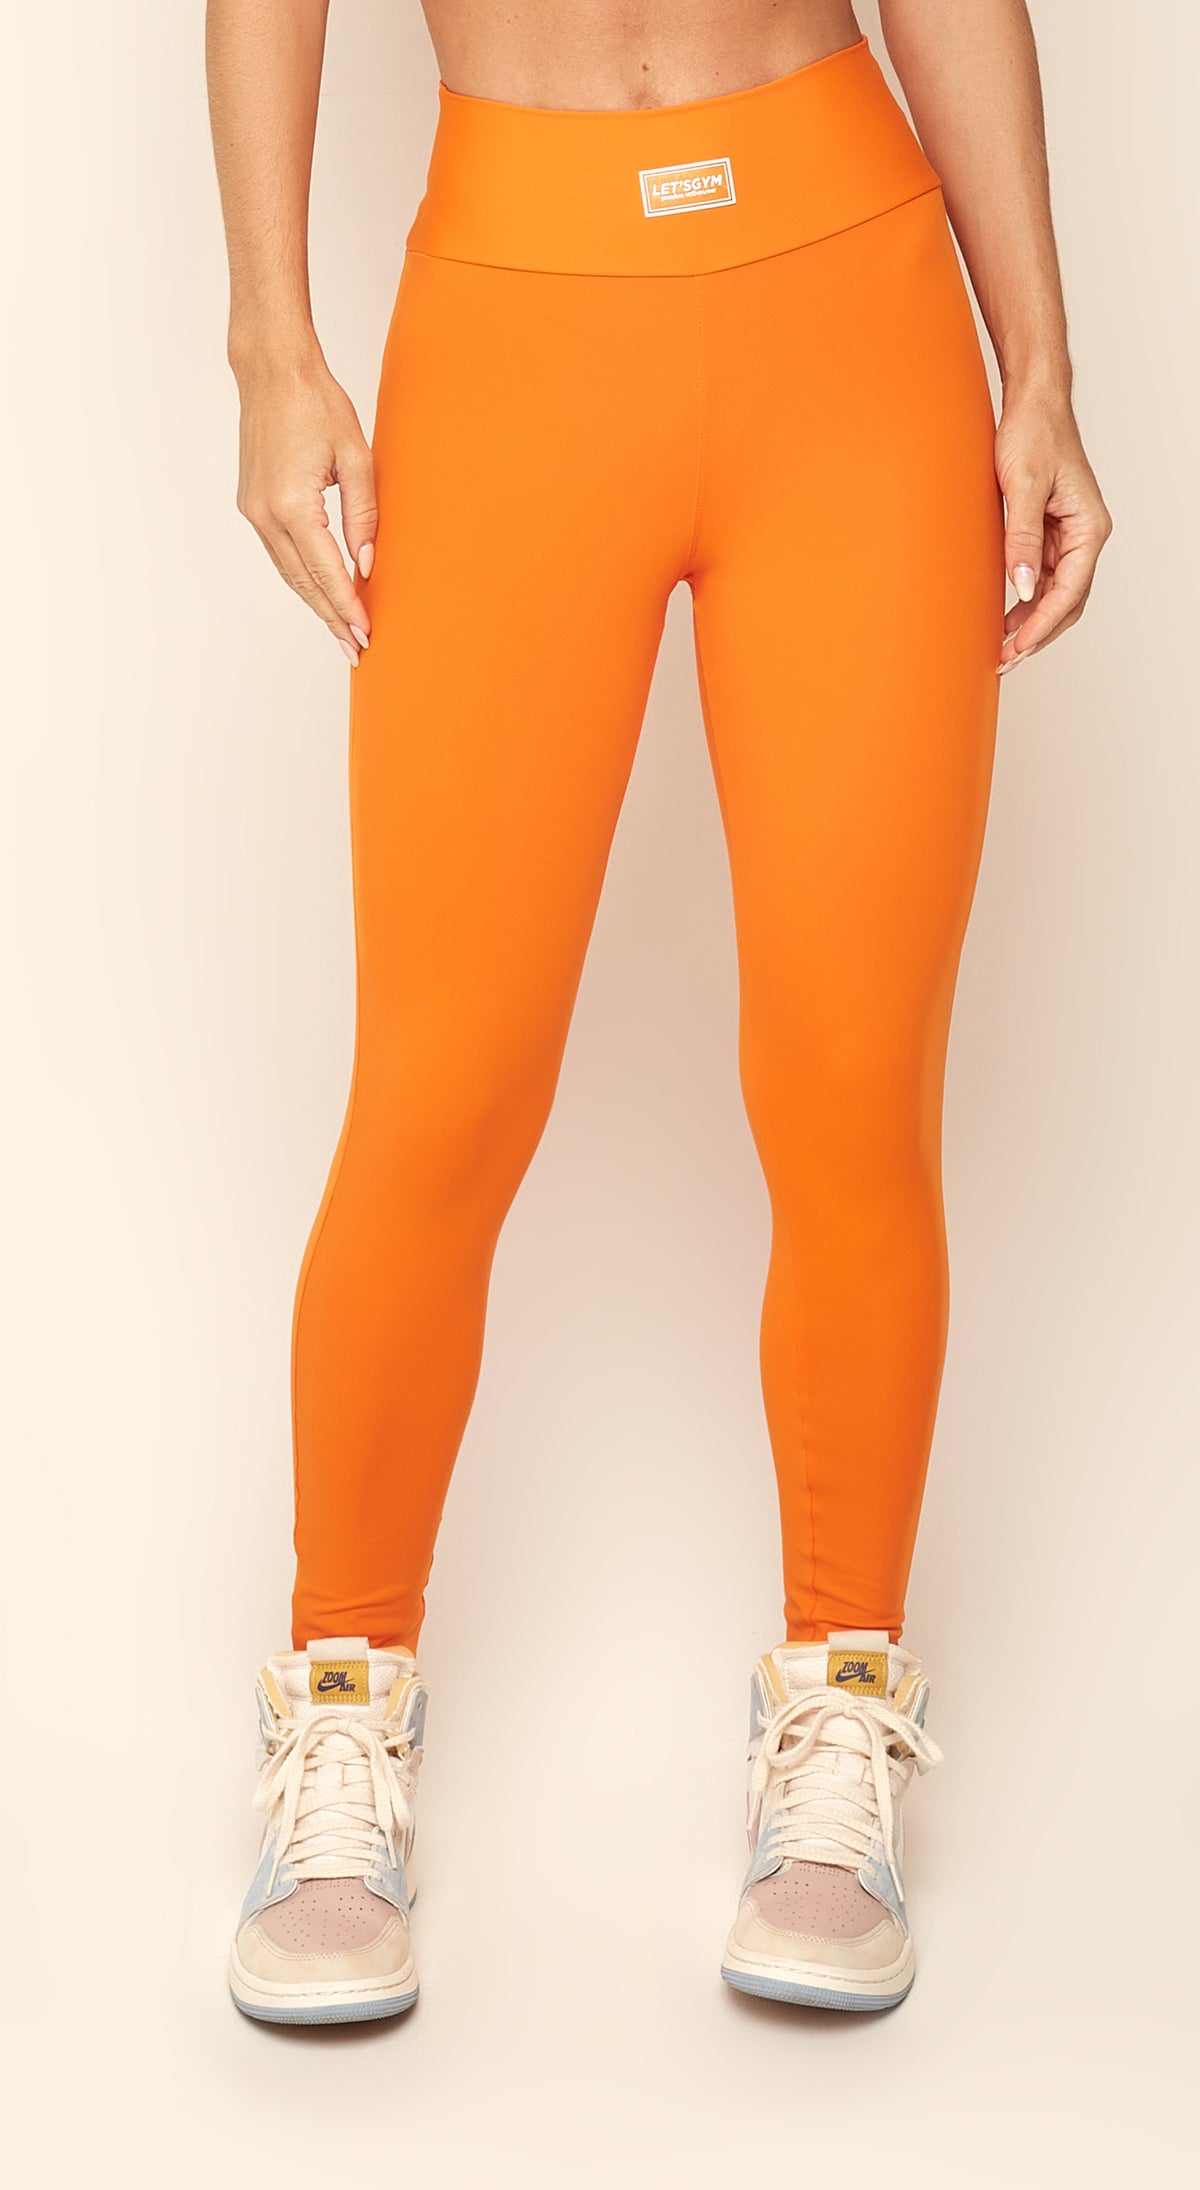 Solid Colors Legging - Orange